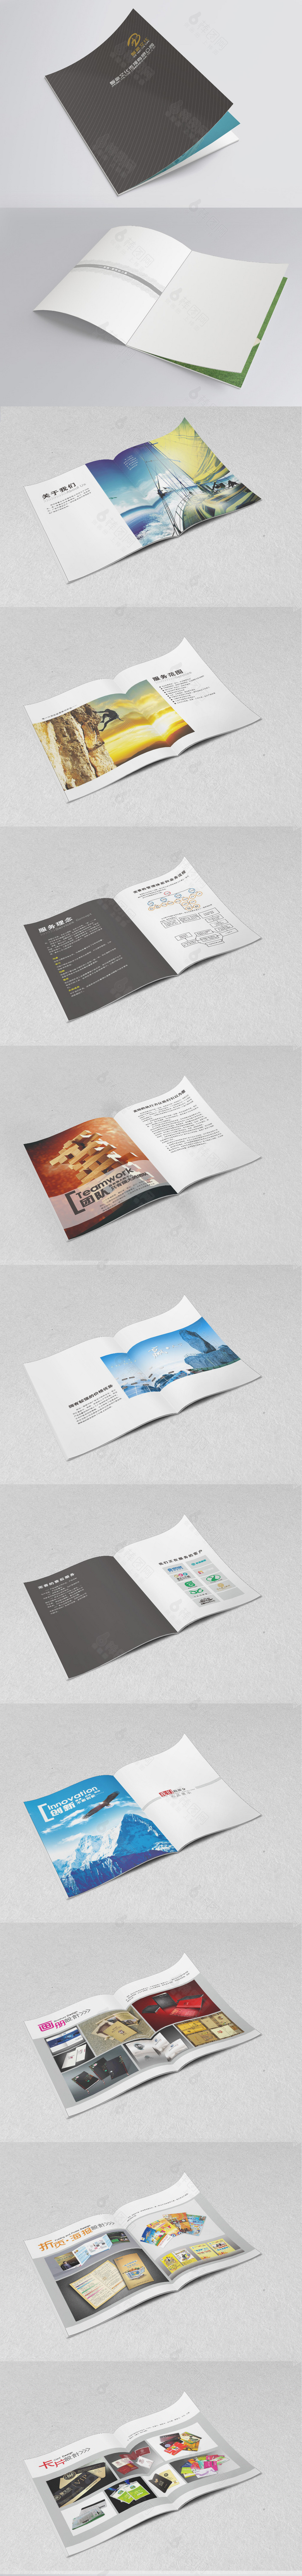 创意策划设计公司画册